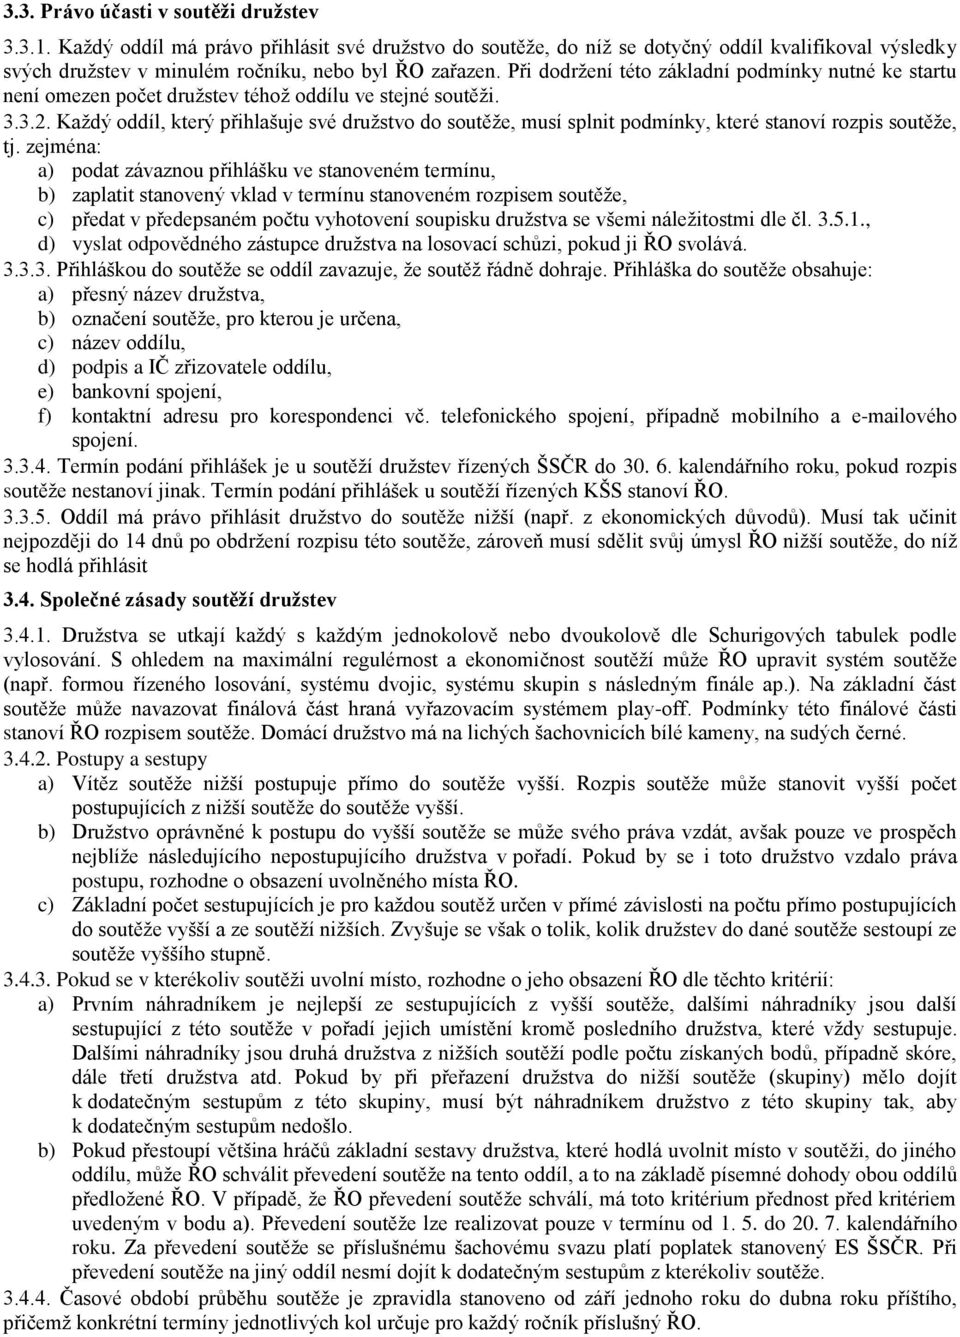 Soutěžní řád Šachového svazu České republiky - PDF Free Download